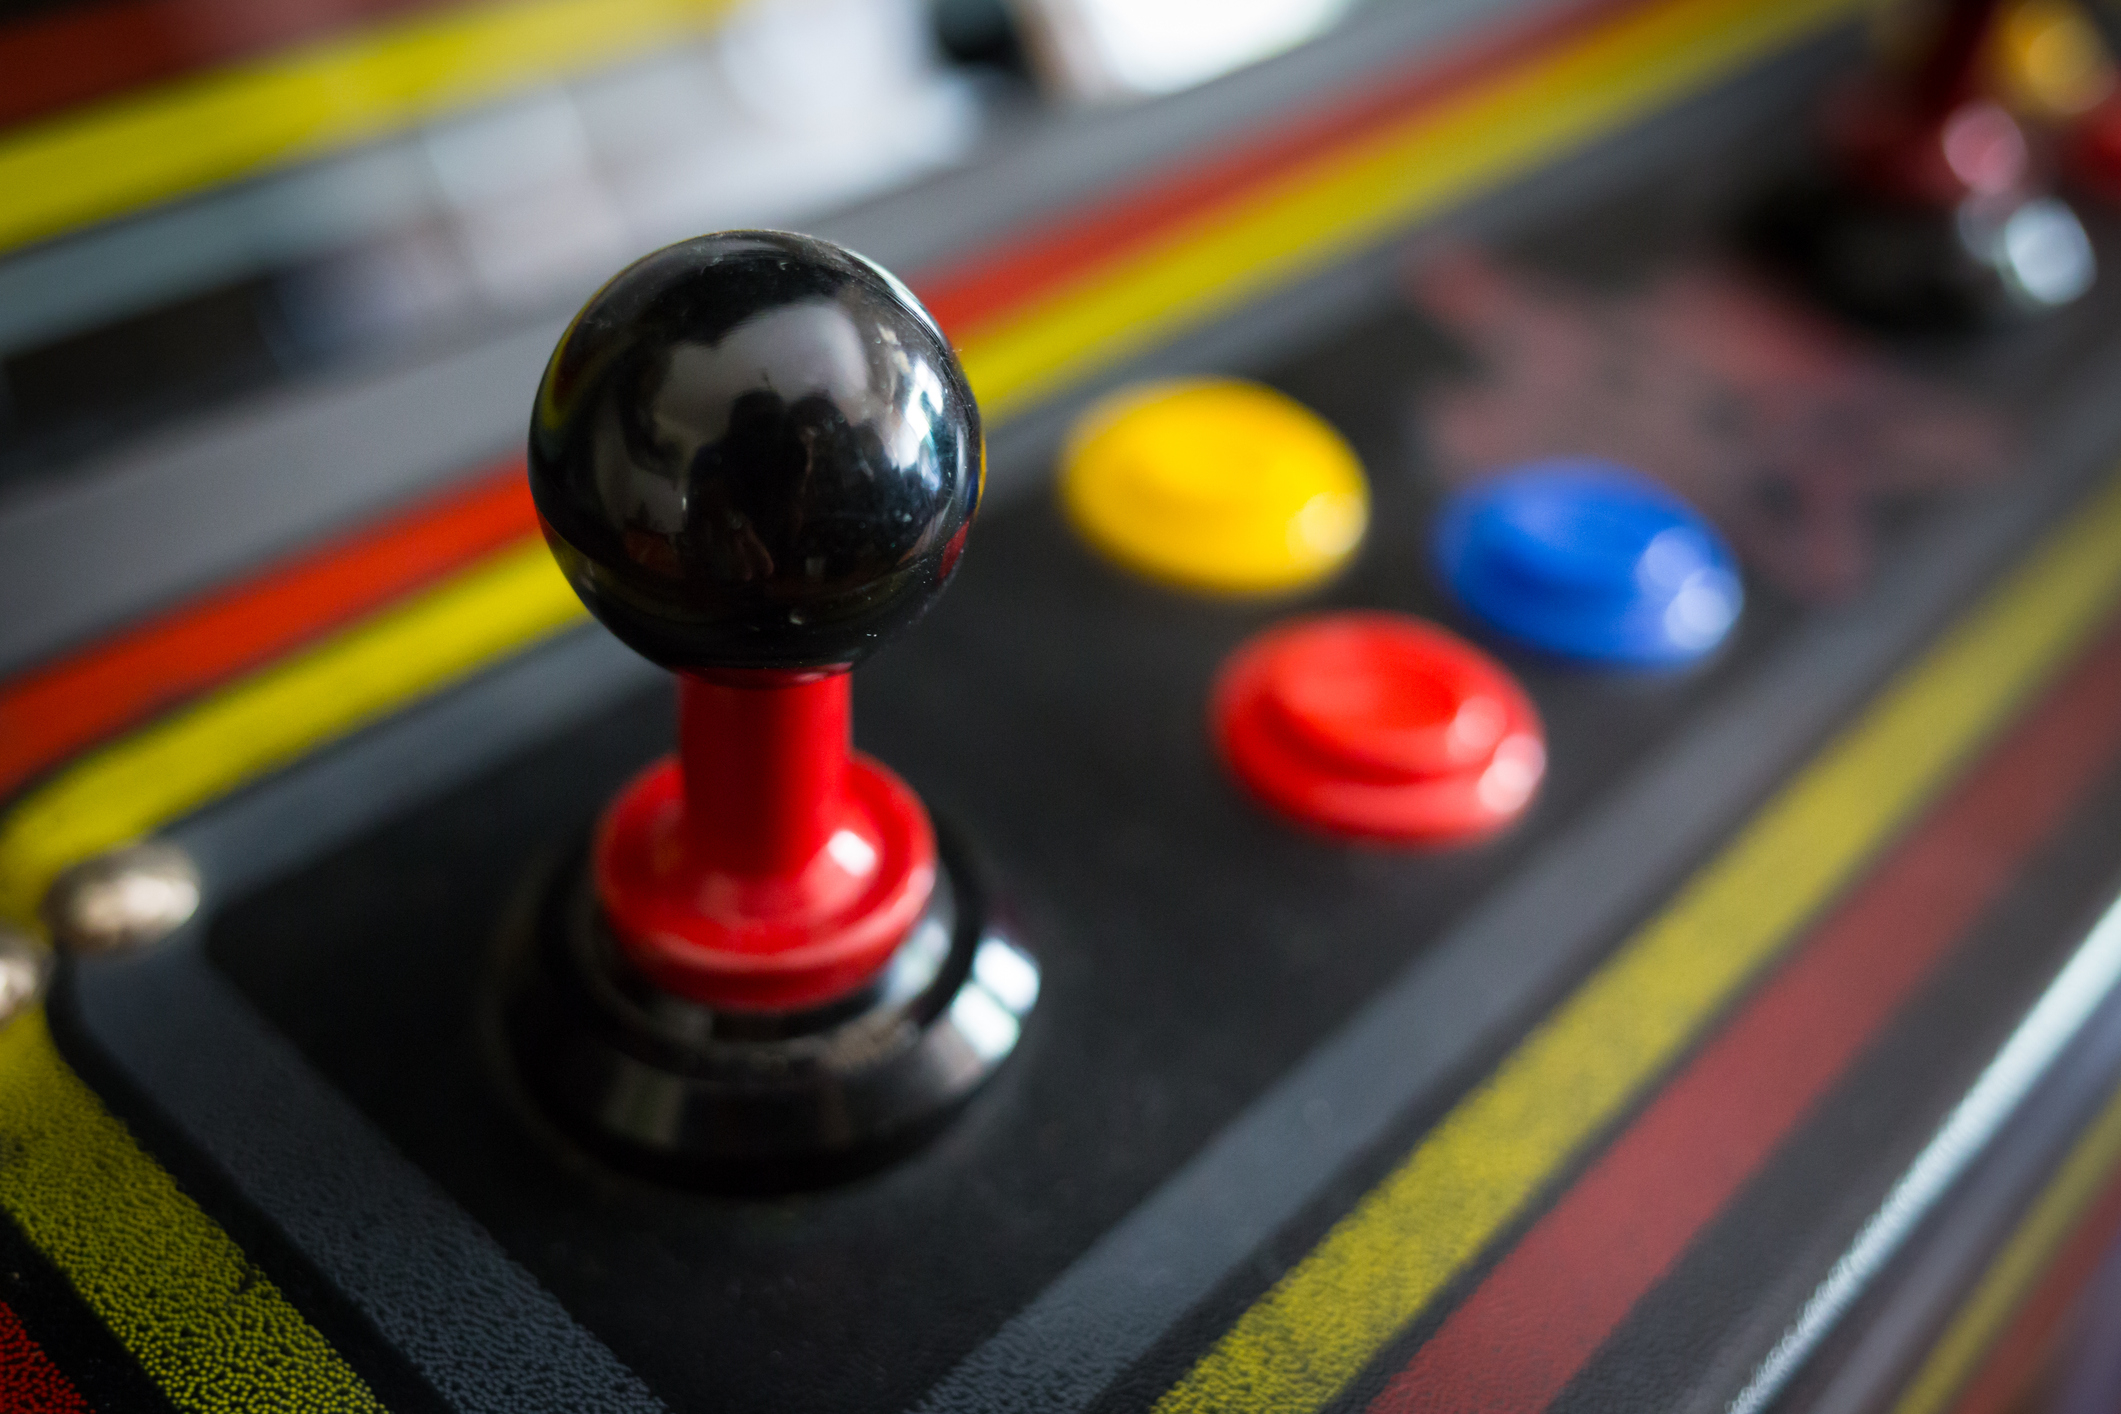 closeup of a joystick on an arcade game